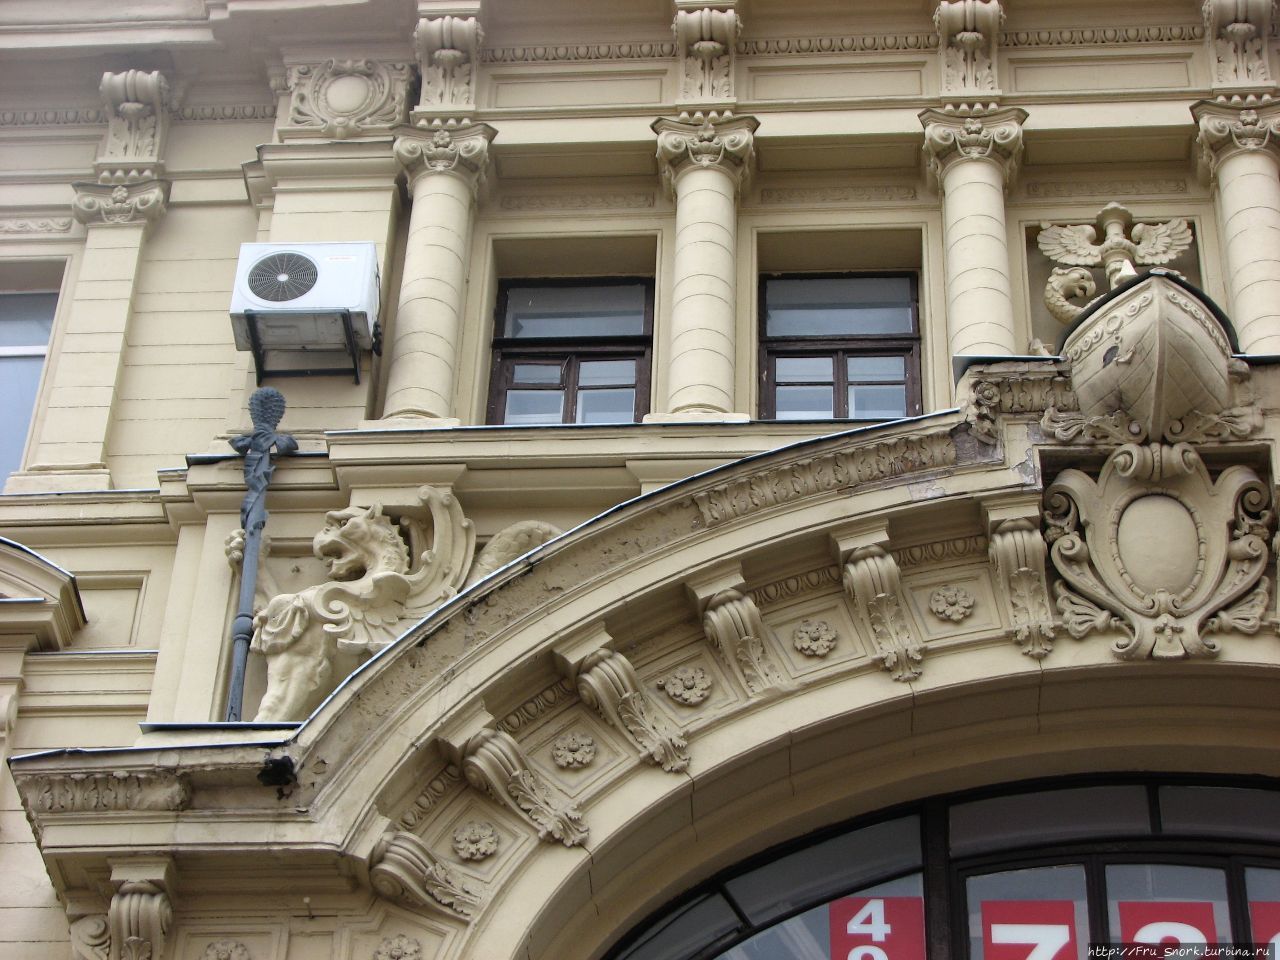 здание усыпано декоративными элементами- грифонами и символом торговли жезлом  Меркурия, а также фасад украшает корма торгового корабля. Москва, Россия